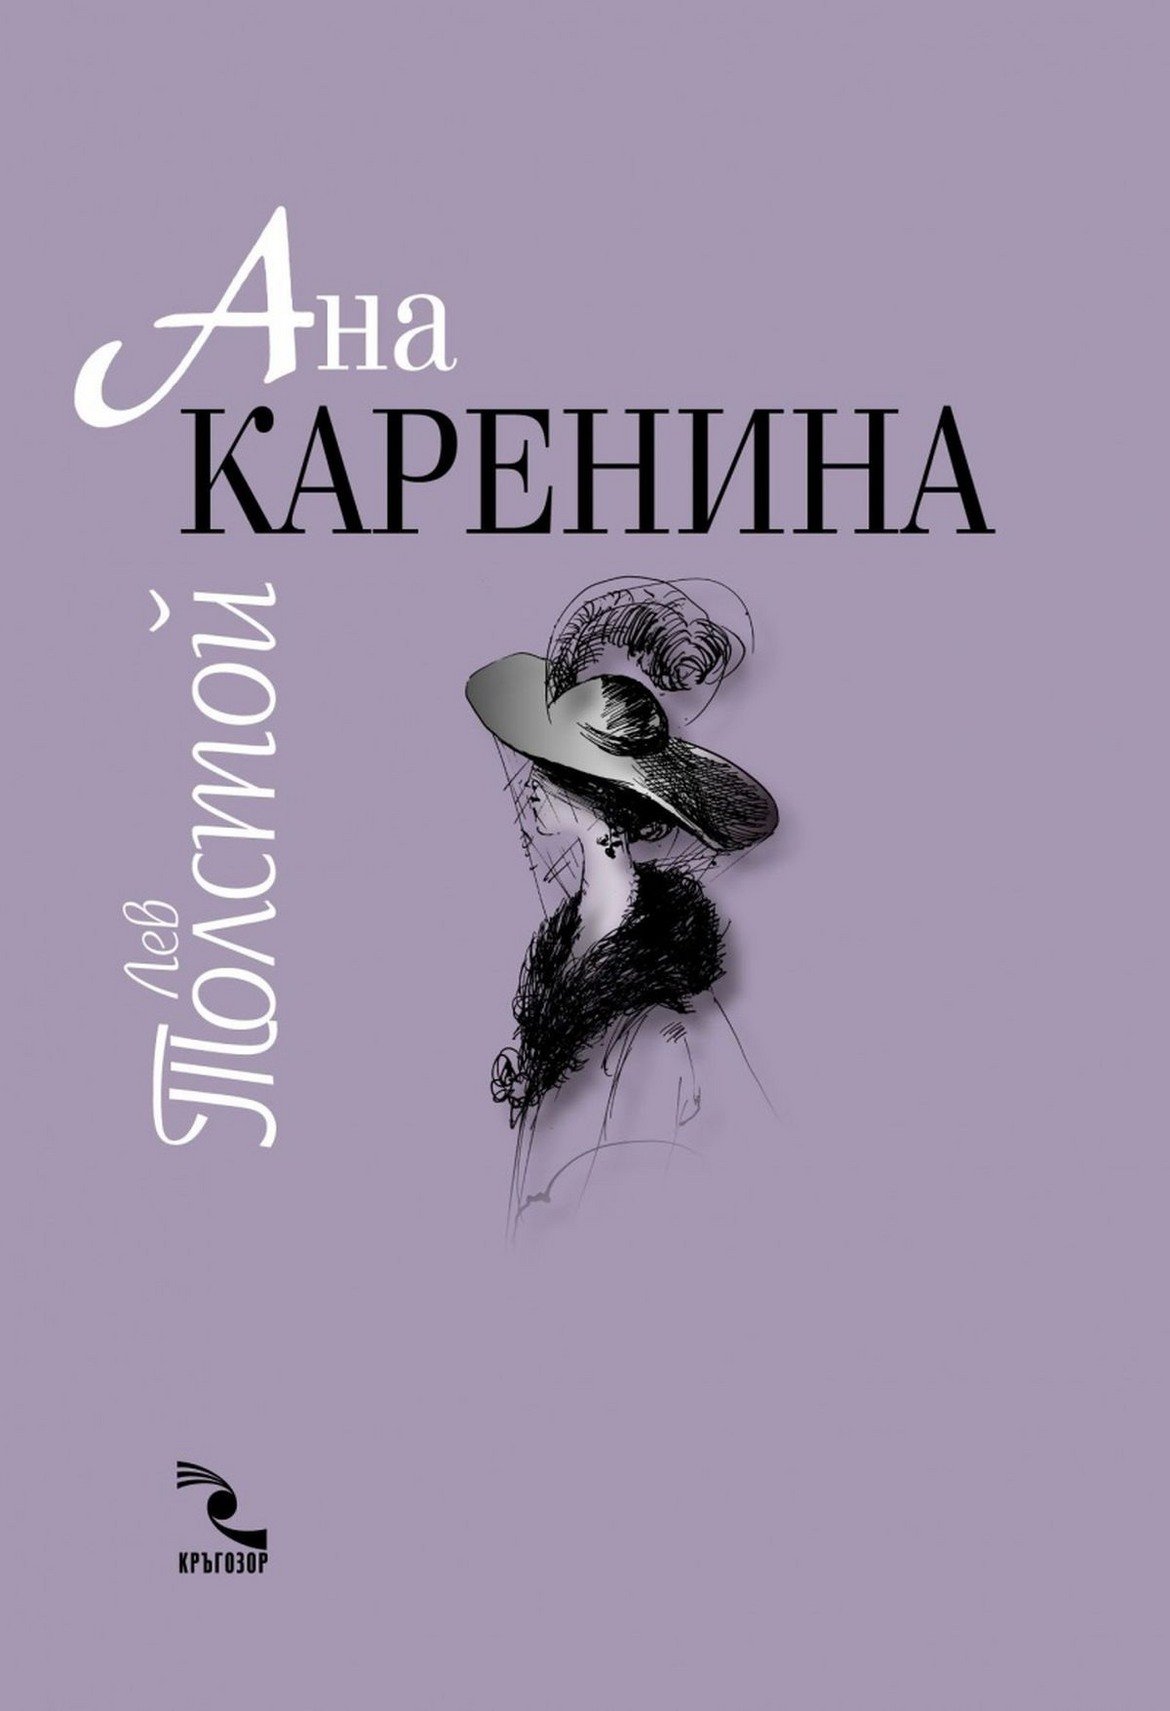 4. "Ана Каренина" от Лев Толстой - Трагедия може да има и когато сърцето на една жена не принадлежи на нейния съпруг и баща на детето й, а я тласка в друга посока. Към една по-гореща, страстна, но и погубваща любов. 